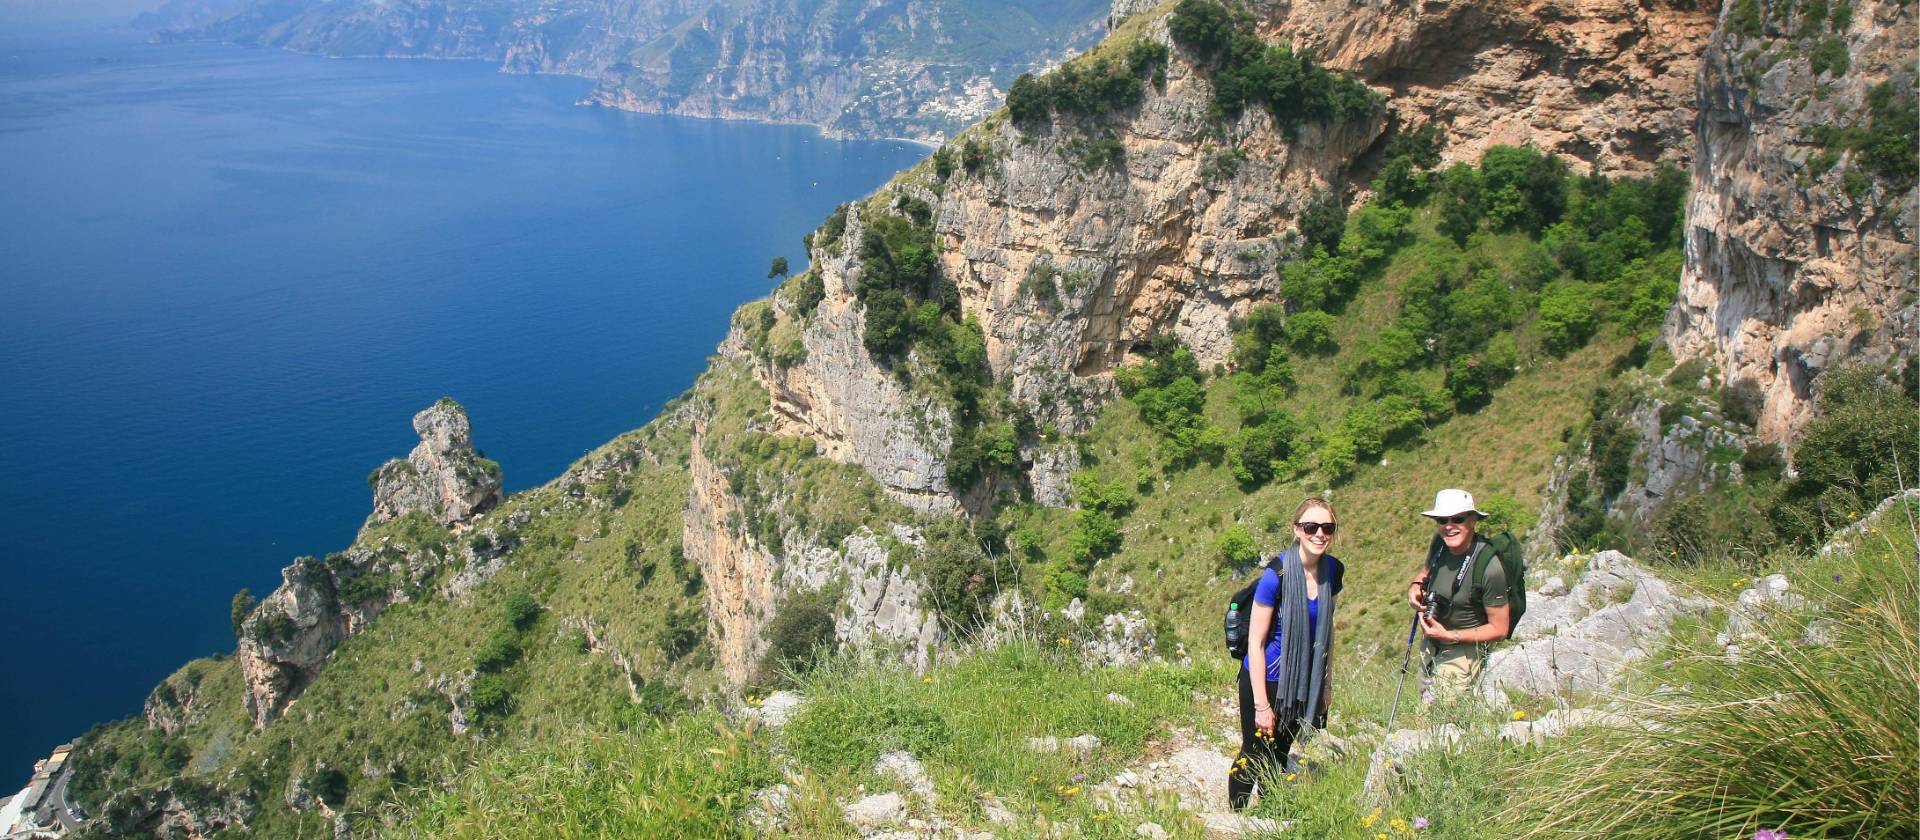 Amalfi Coast Waking Holiday, 11 Days | Capri & Path of the Gods ...